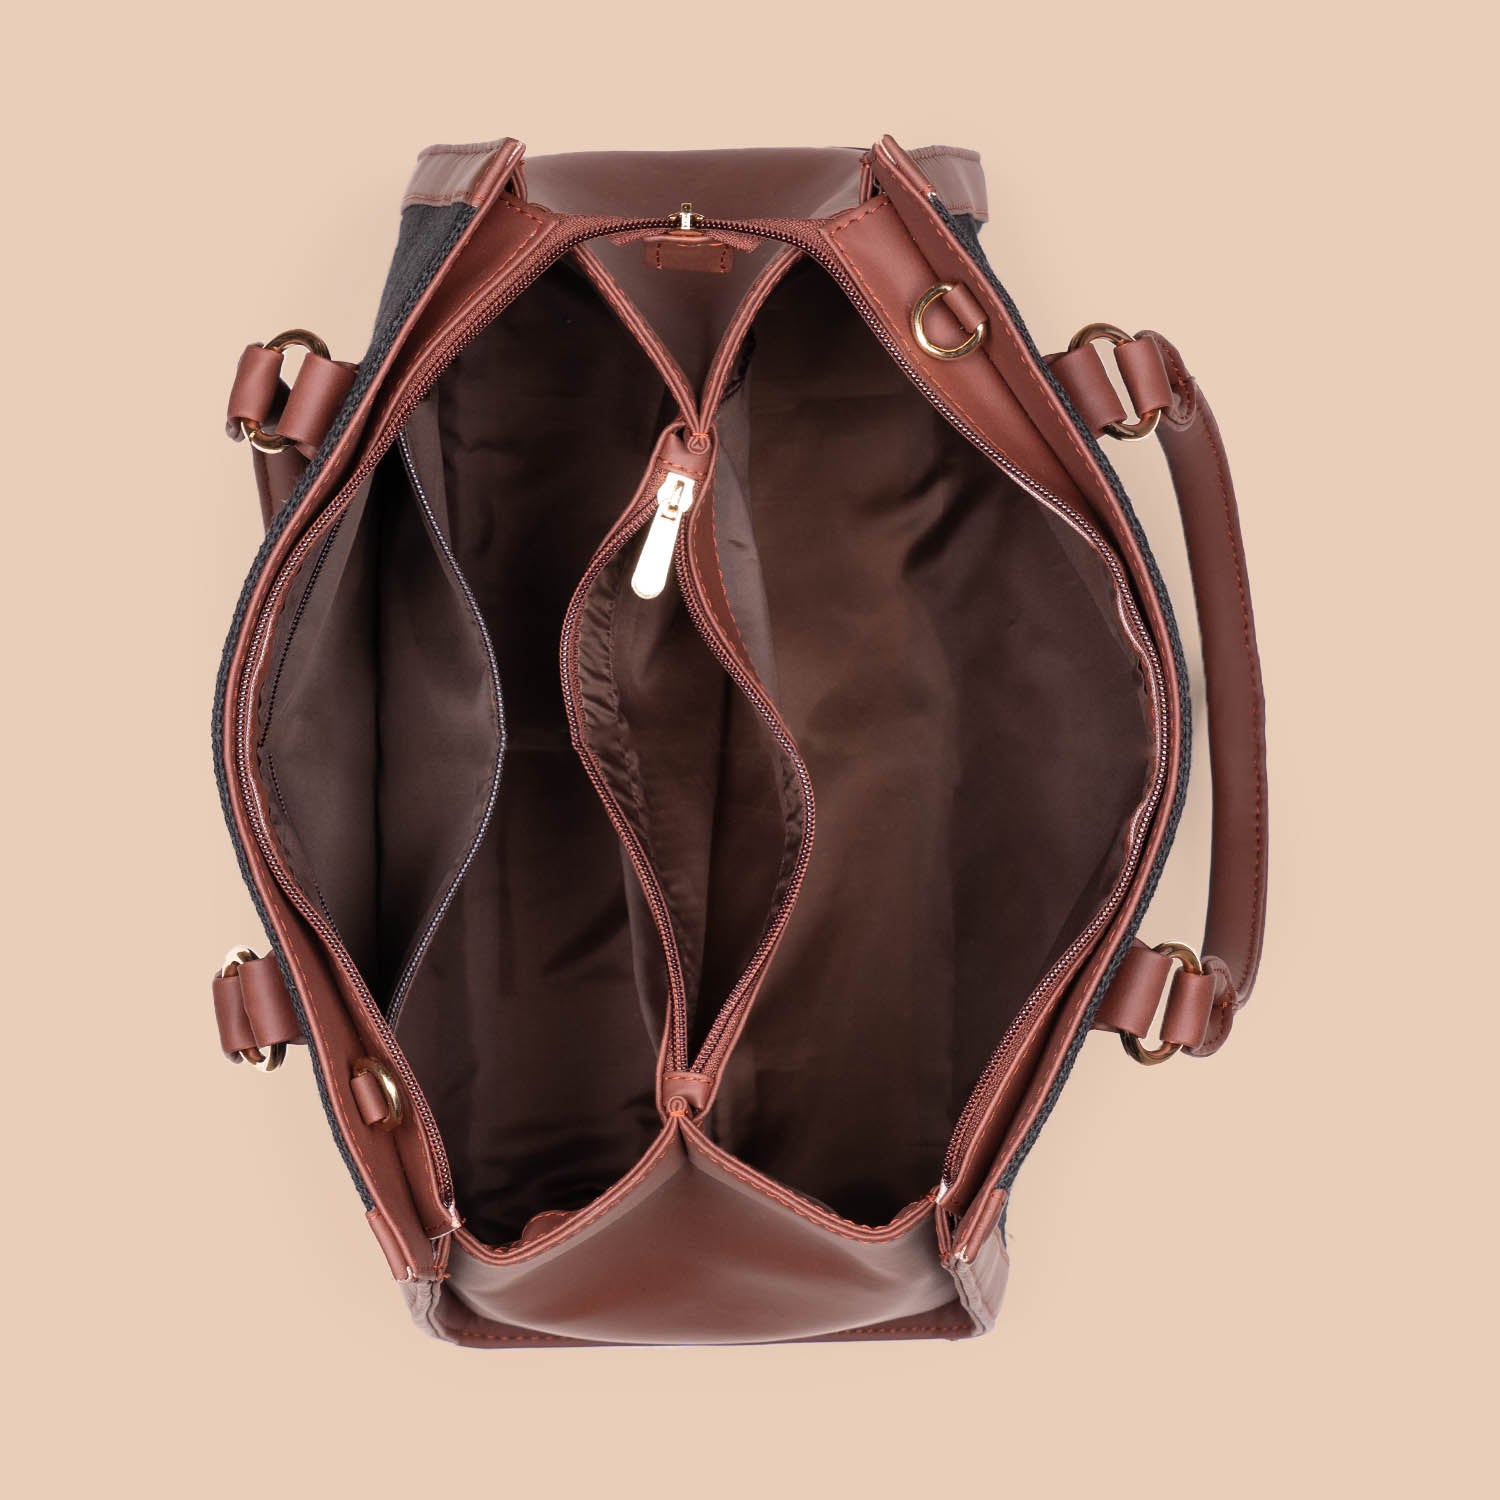 Hooghly Nouveau Classic Handbag